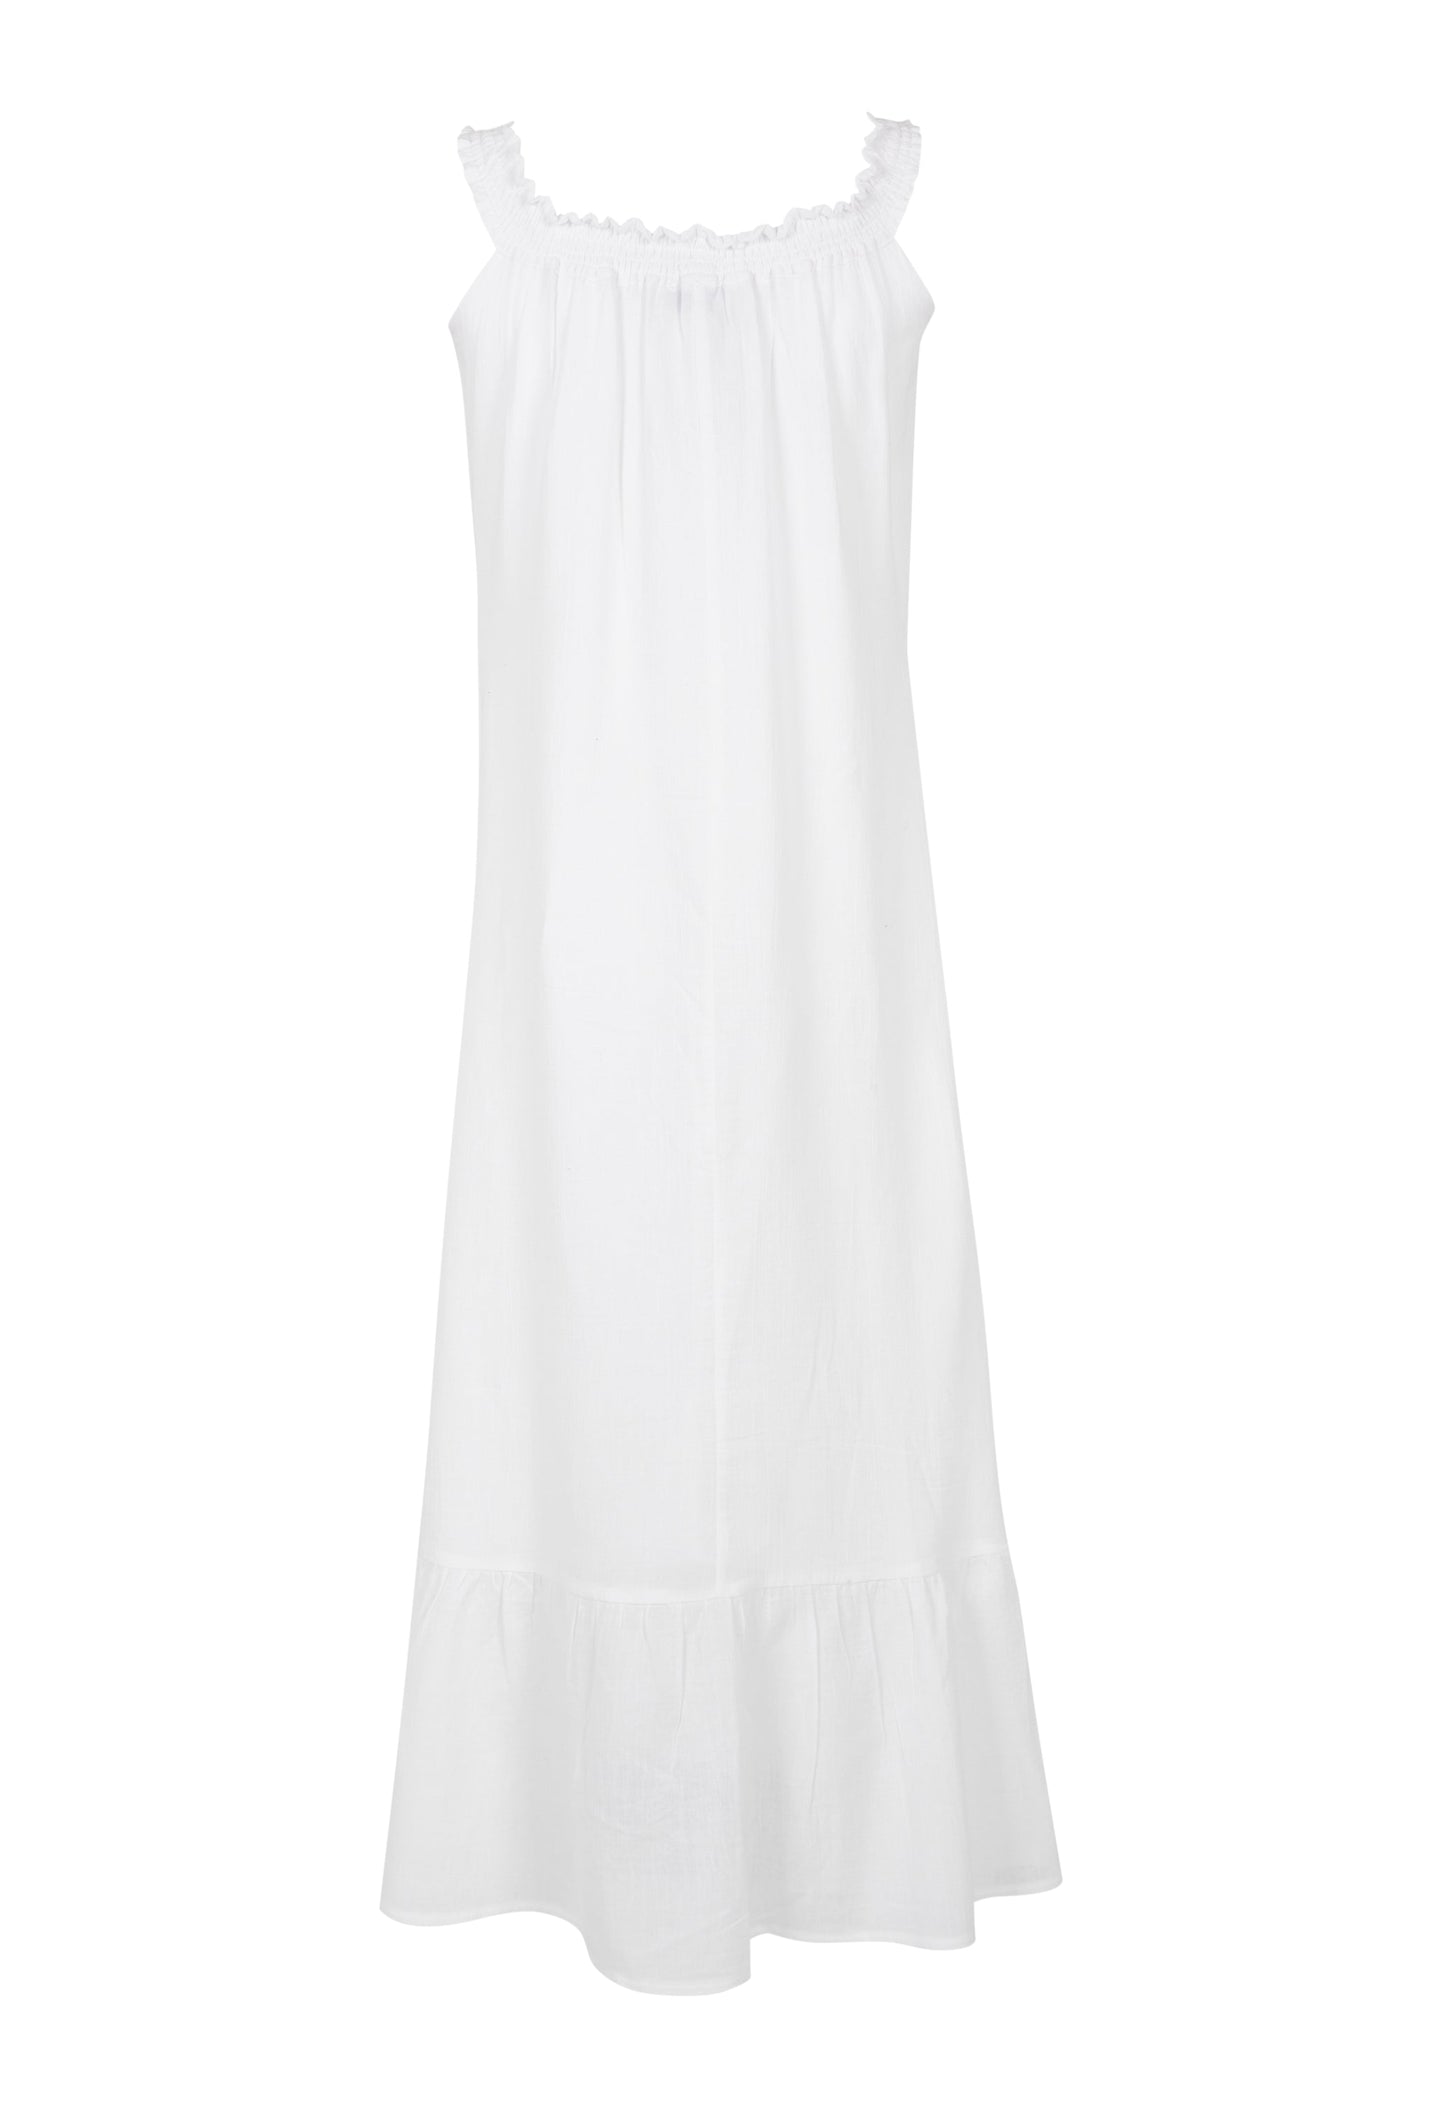 MALIBU MAXI DRESS - WHITE